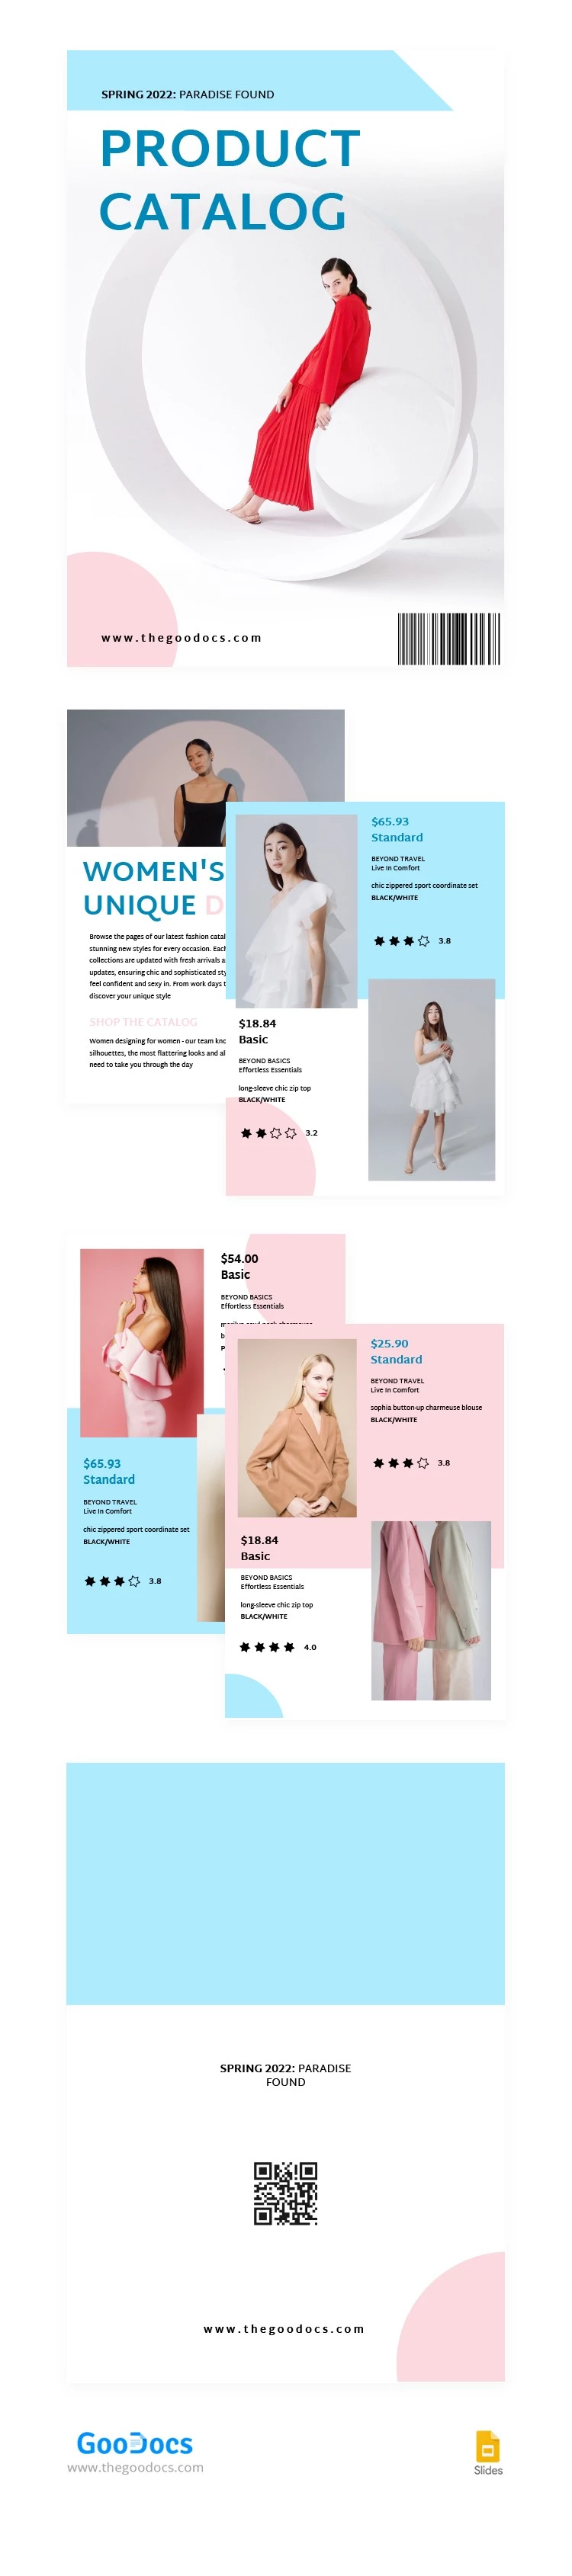 Catálogo de productos de moda - free Google Docs Template - 10063369